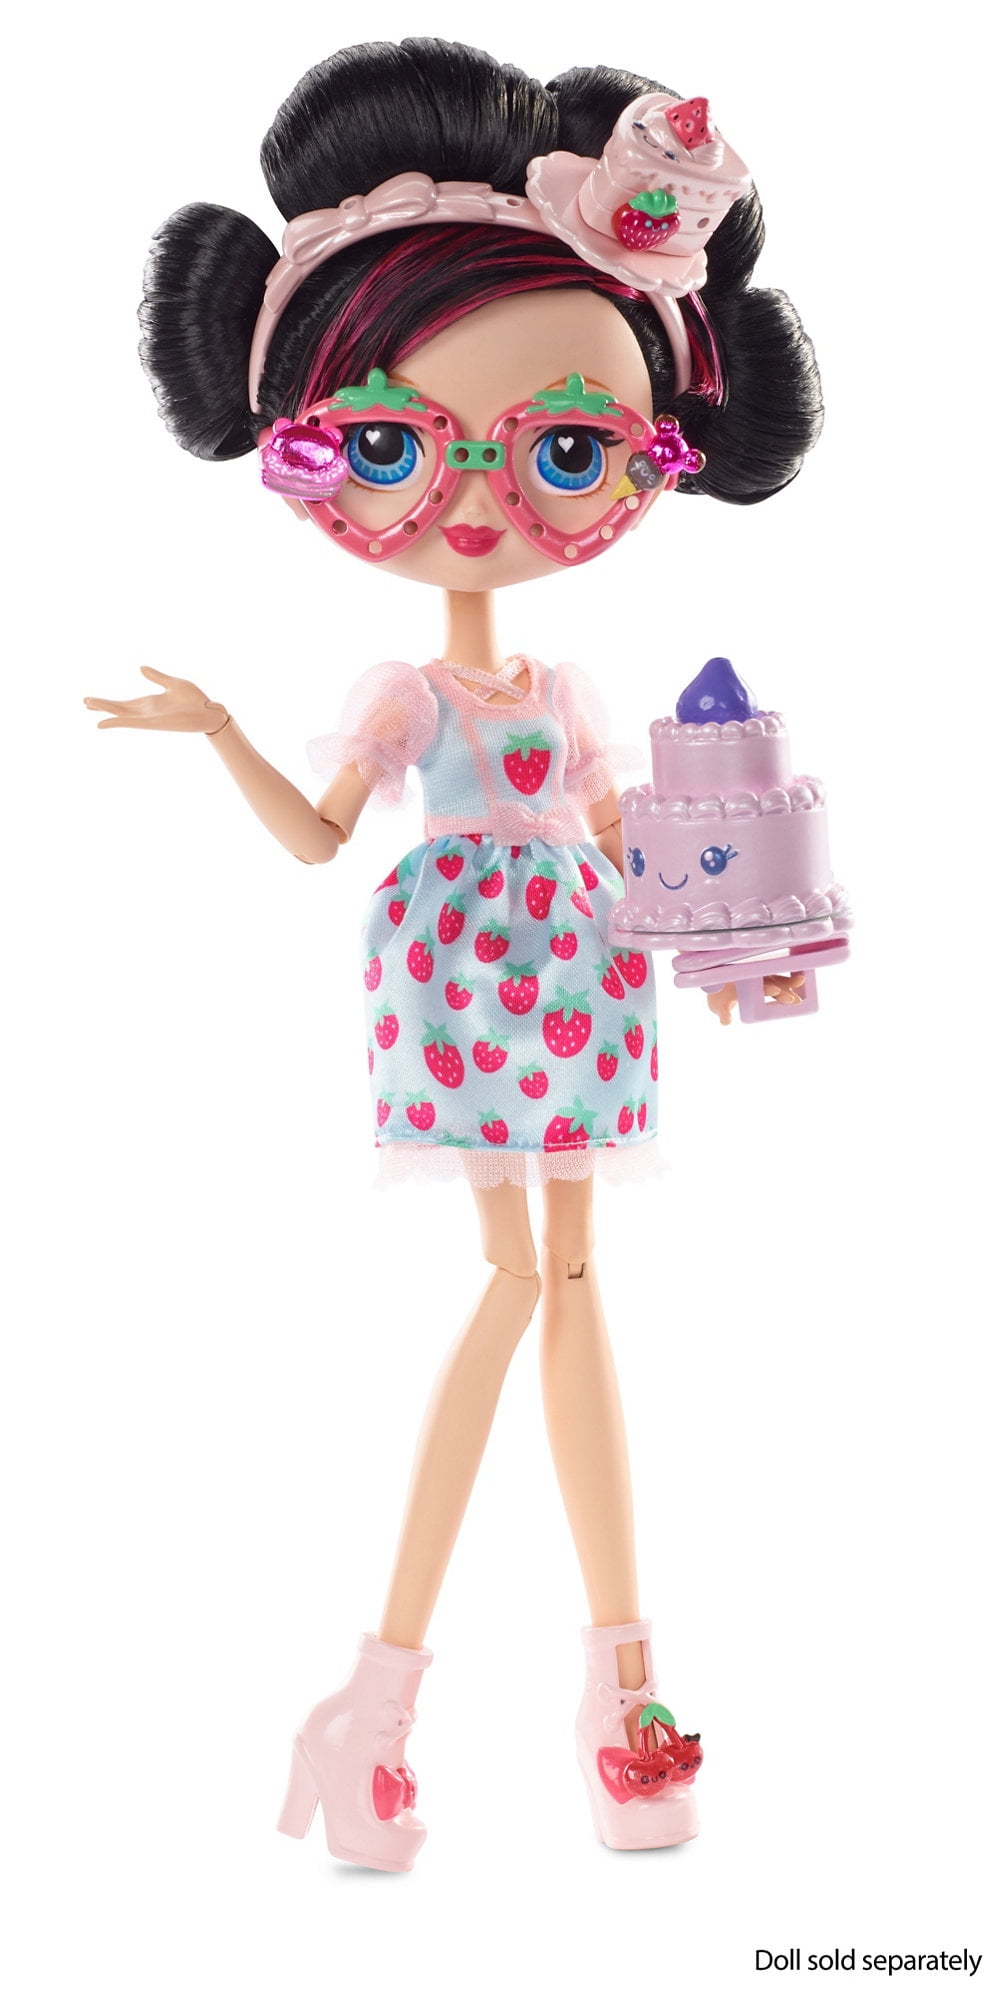 KUU KUU HARAJUKU Super Strawberry Fashion Pack By Mattel for 10" Doll New 